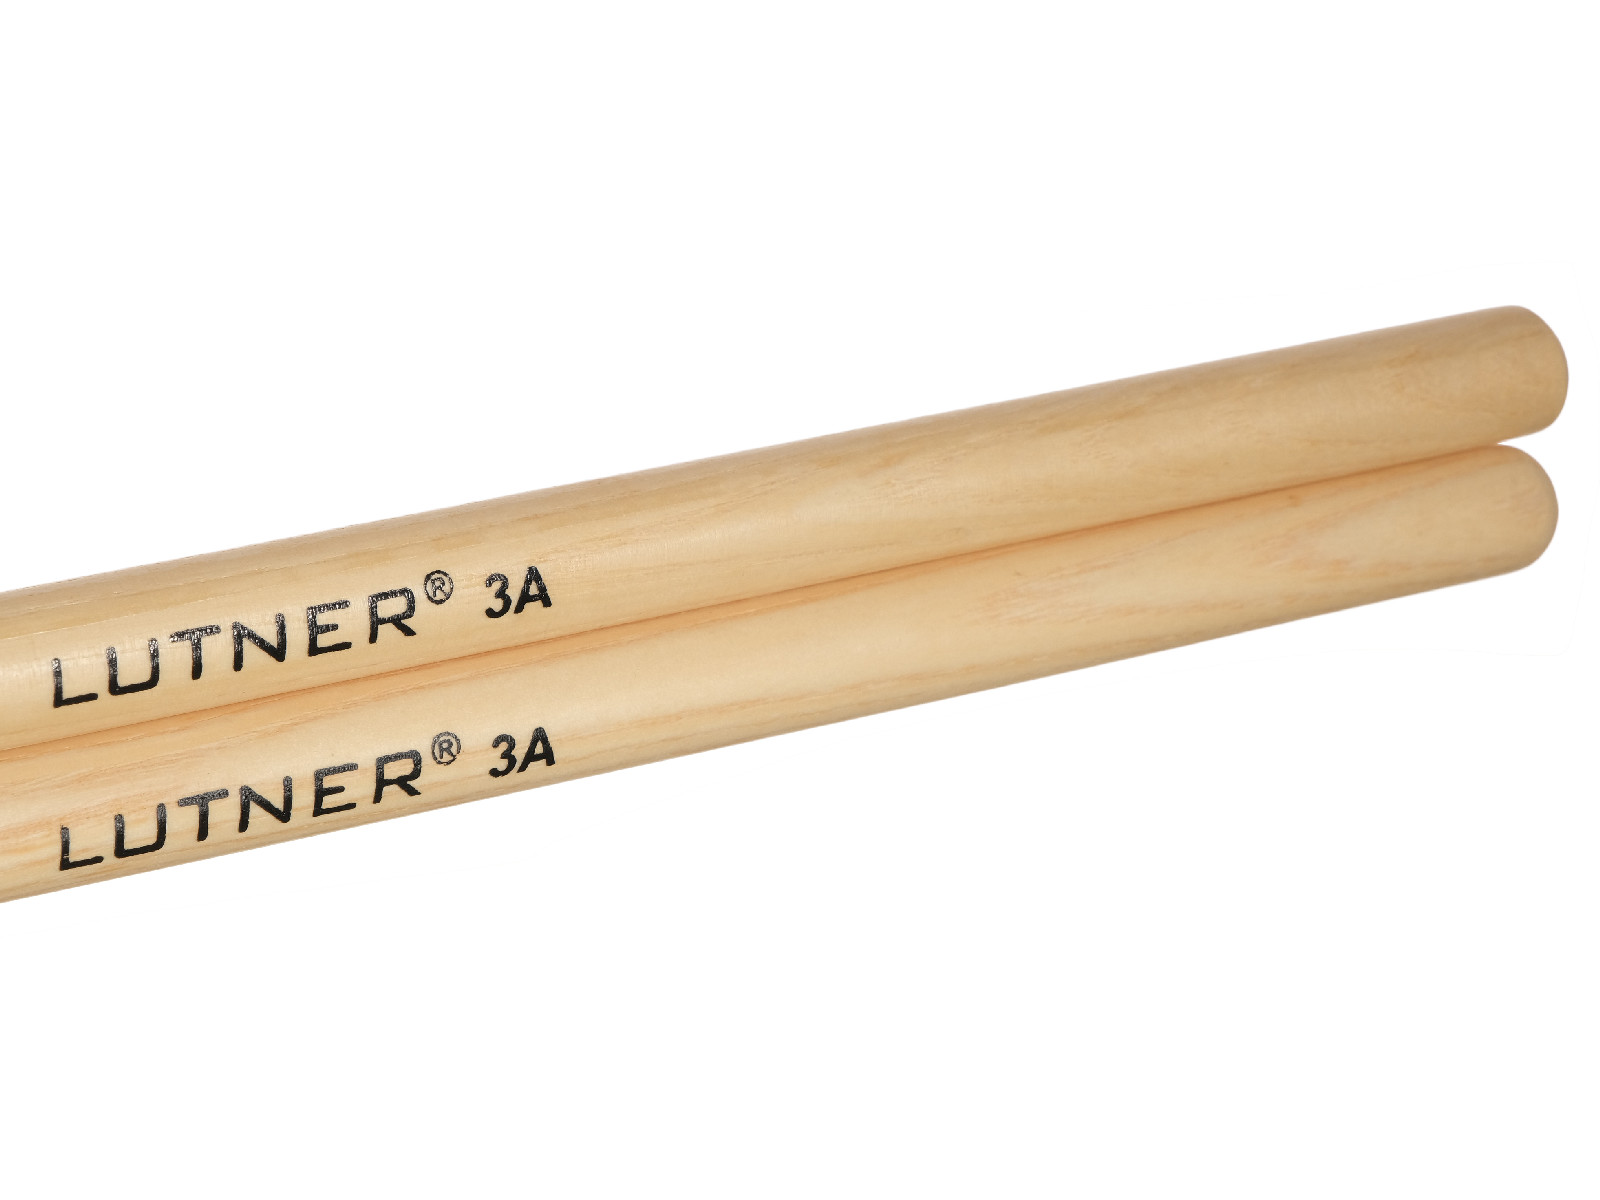 Lutner 3A - Комплект барабанных палочек. Материал - Орех (гикори). Длина 406мм, диаметр 15мм. купить в prostore.me